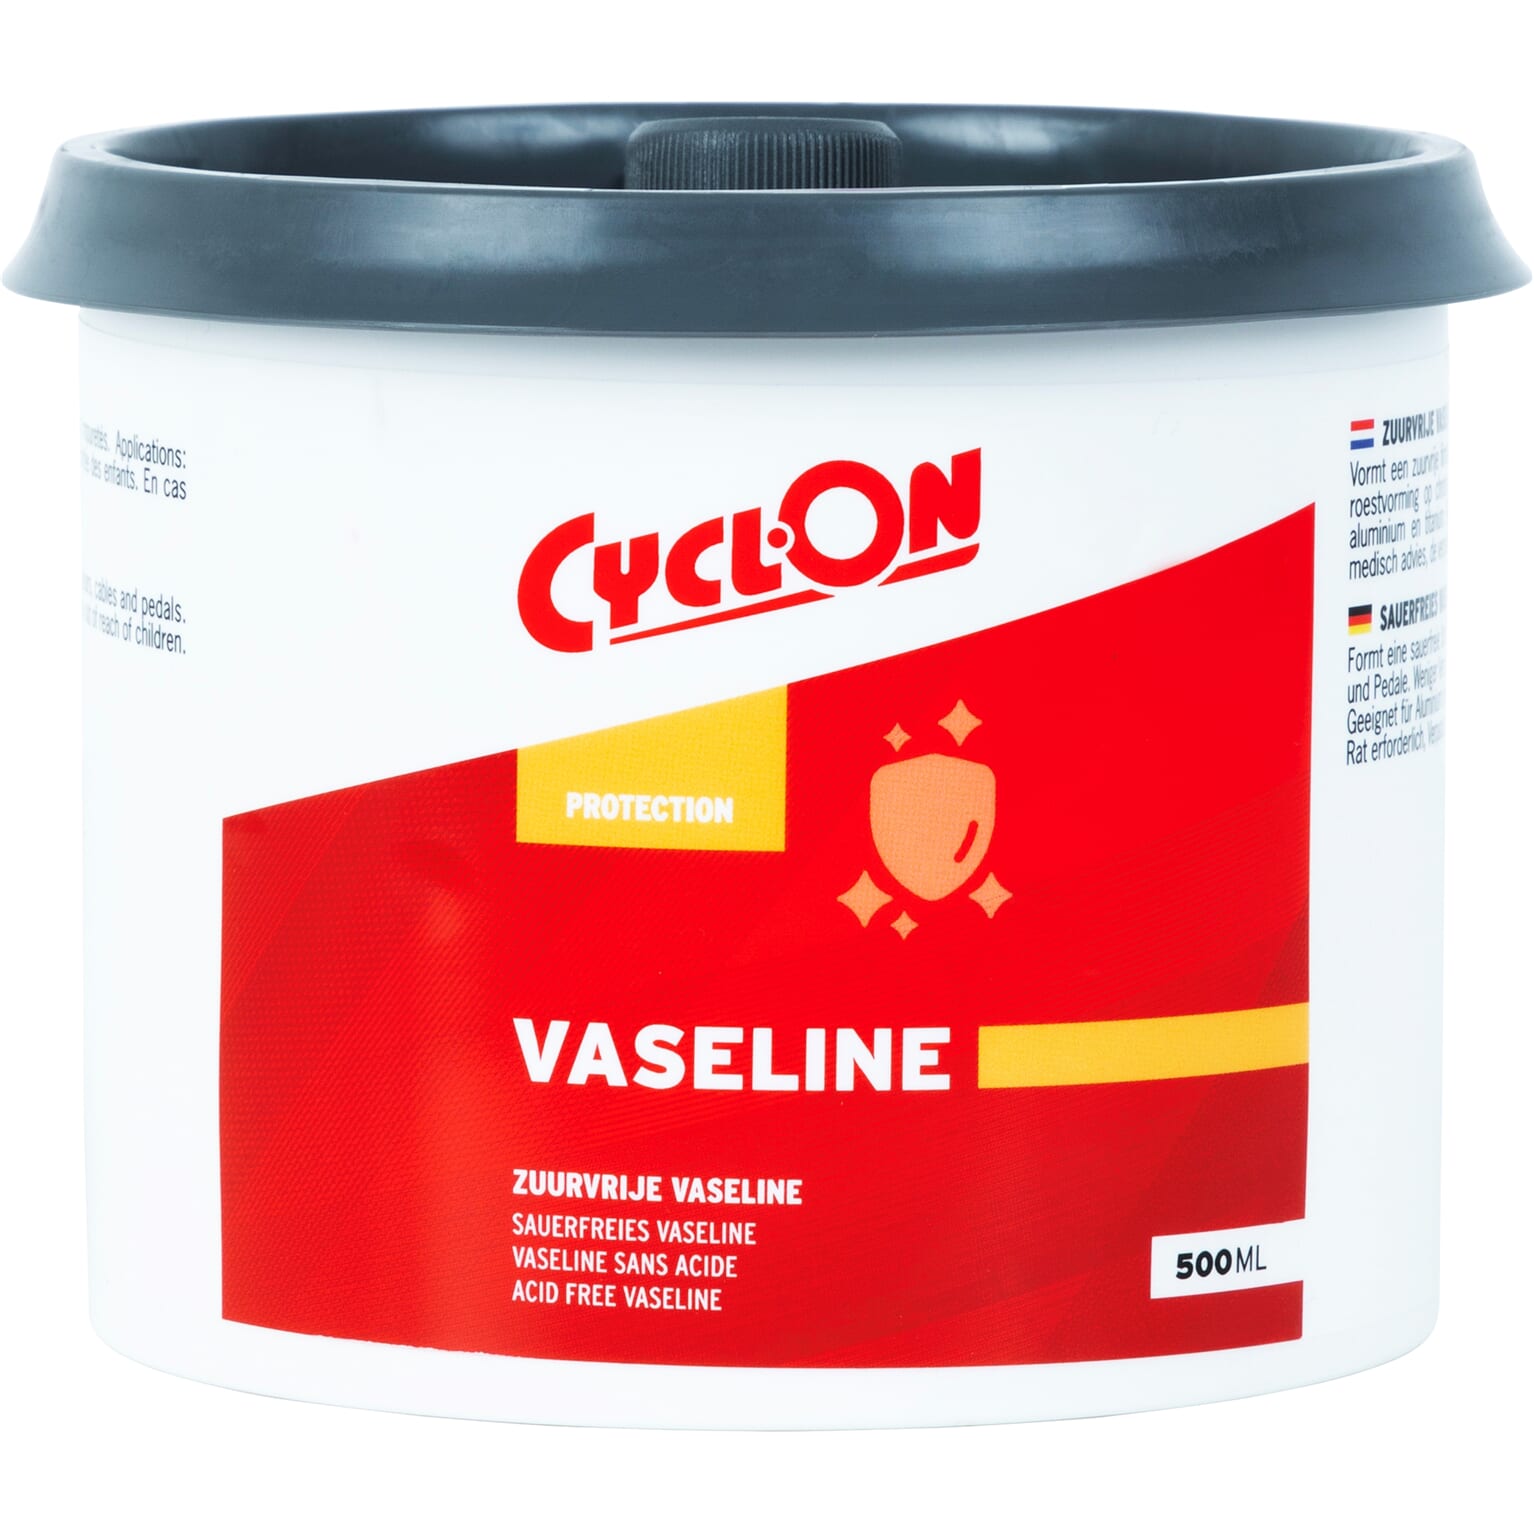 Cyclon Vaseline 500ml